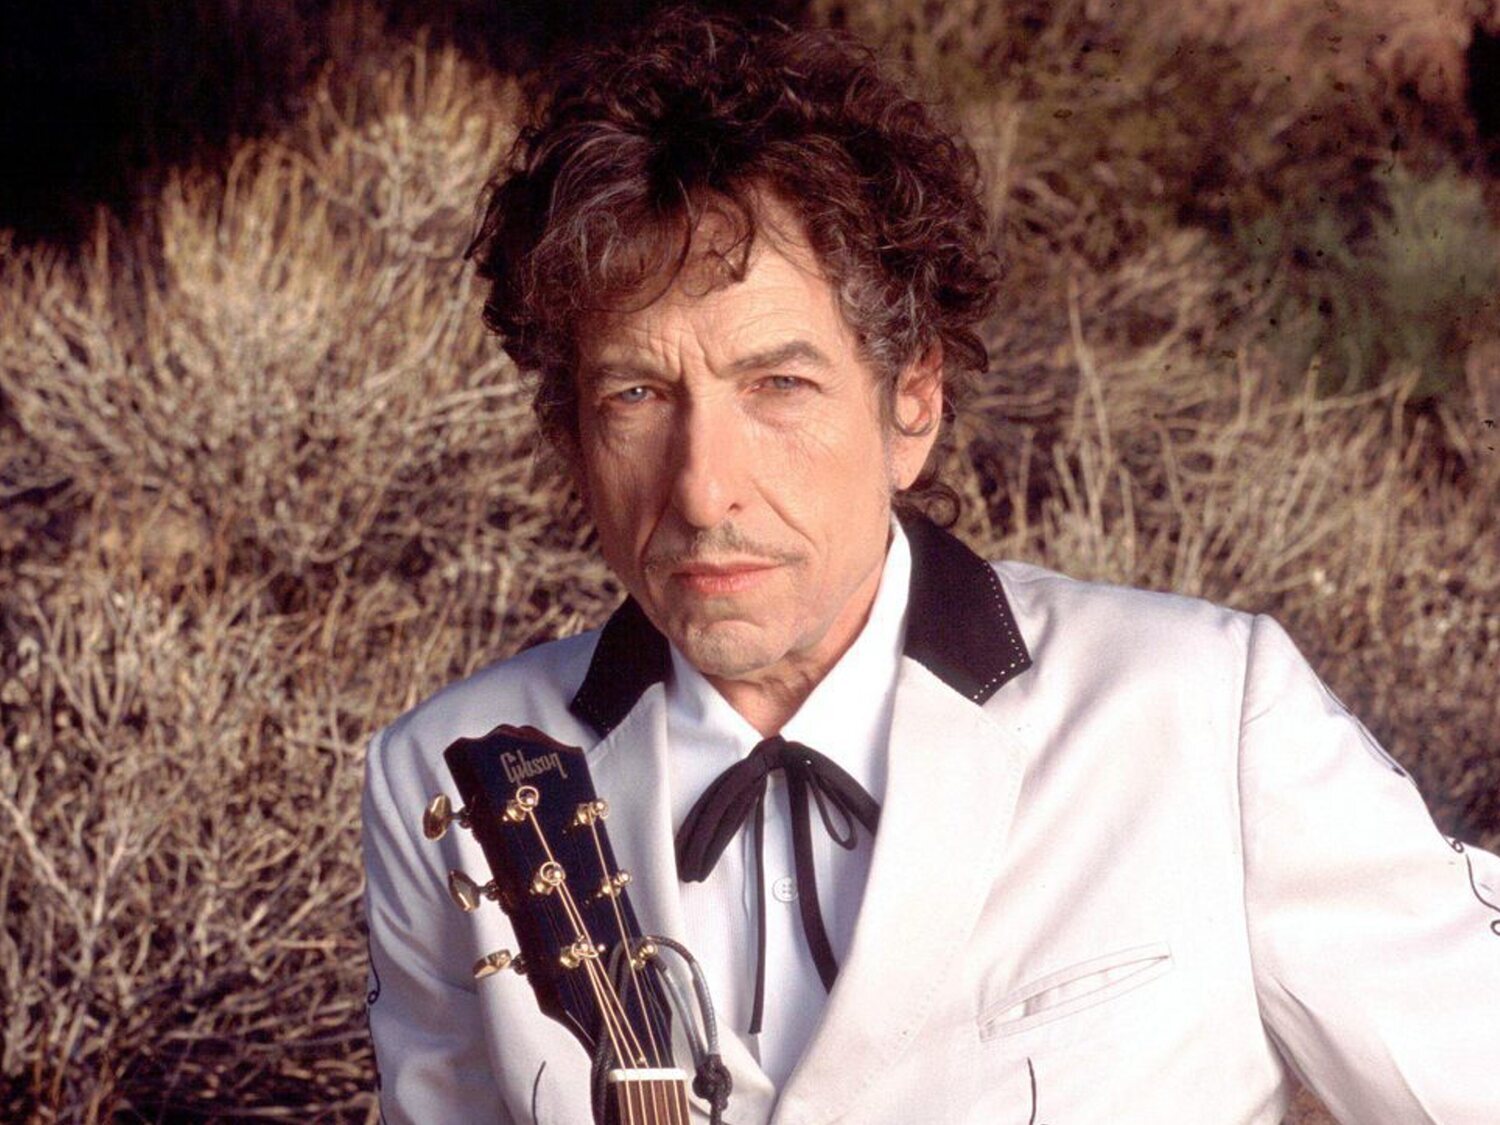 Una mujer acusa a Bob Dylan de haber abusado sexualmente de ella cuando tenia 12 años